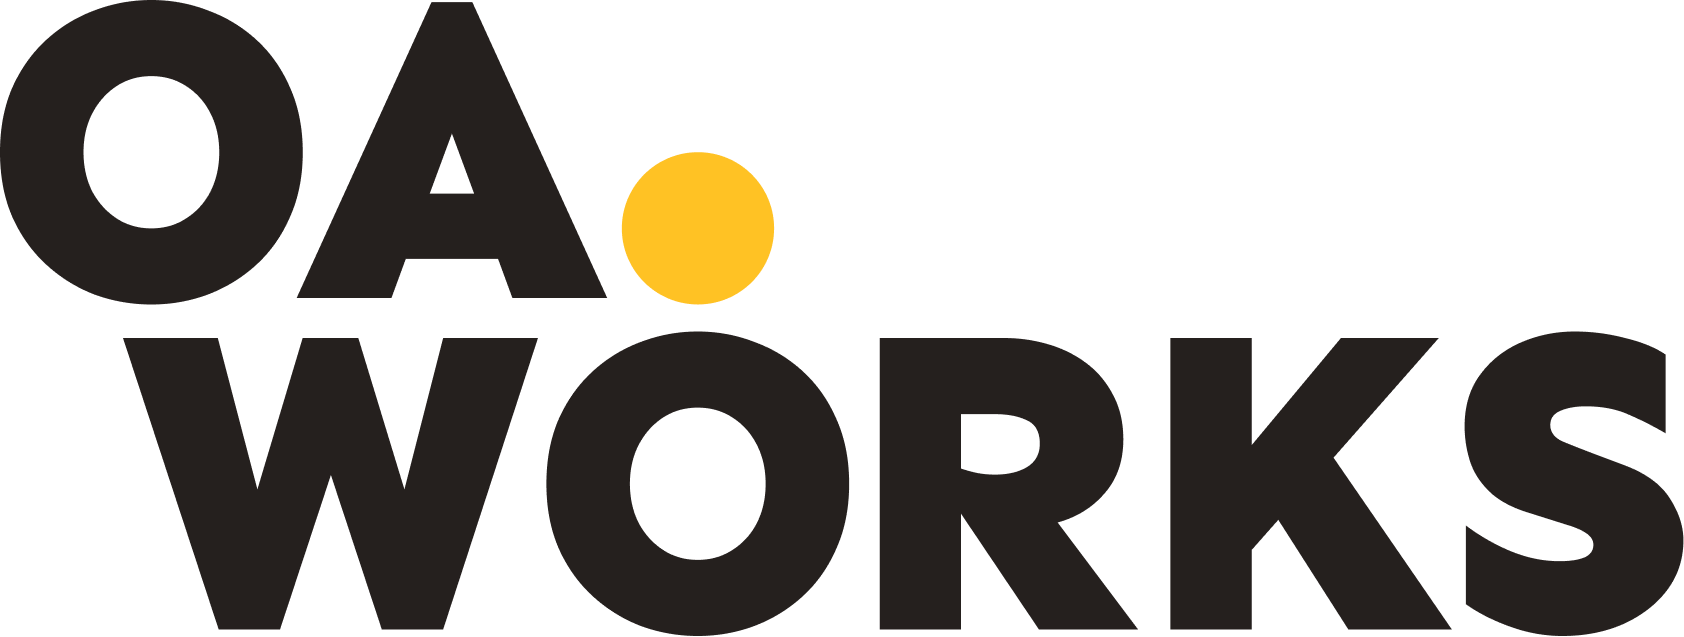 OA.Works logo